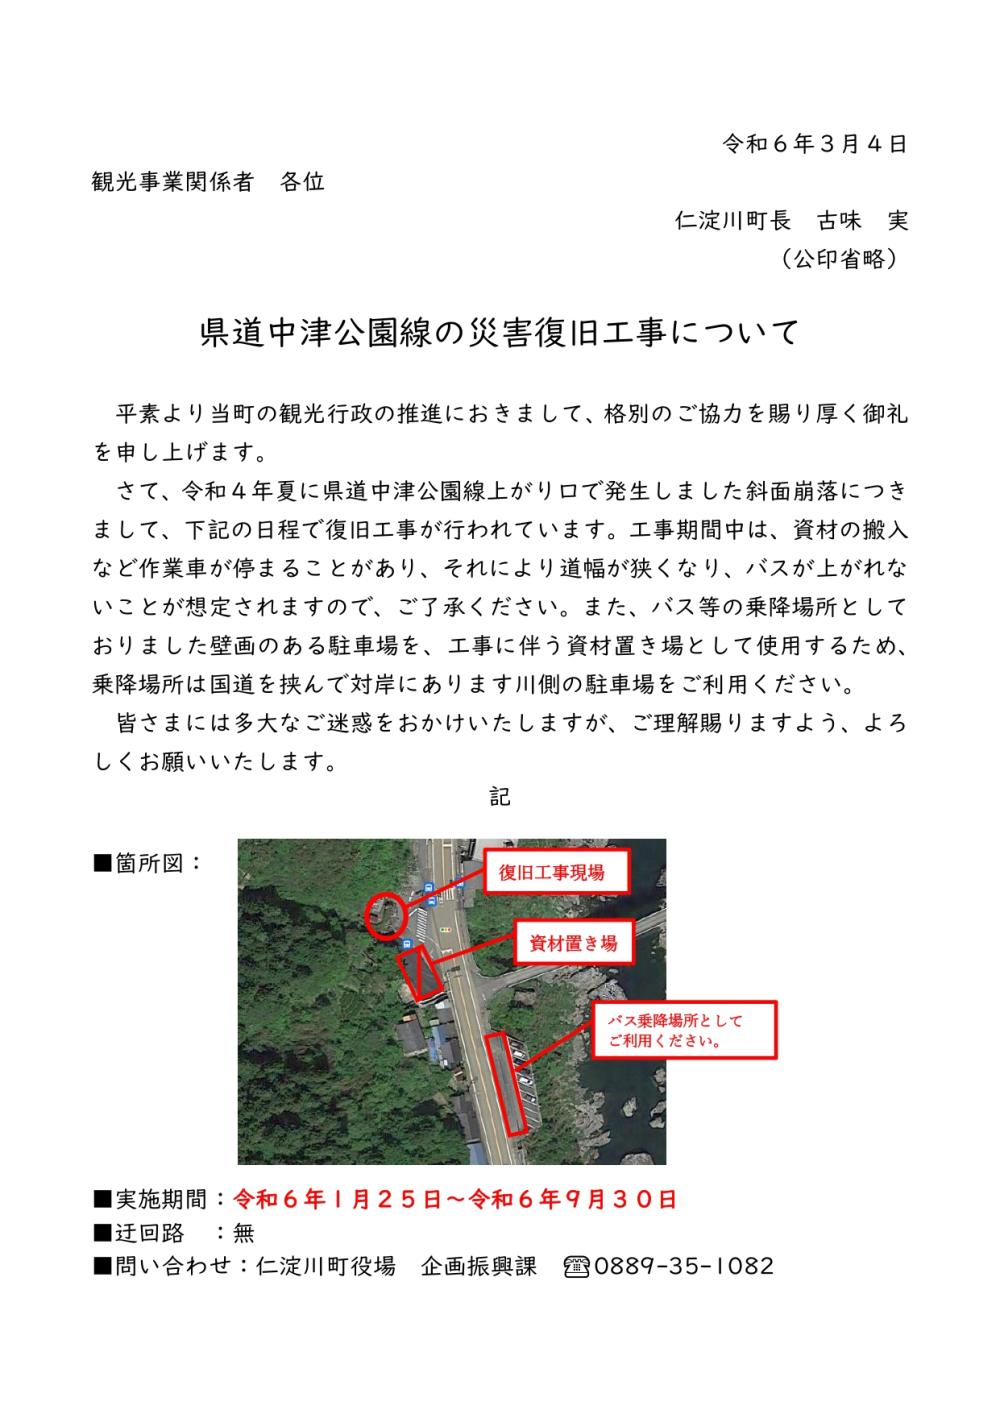 県道中津公園線（中津渓谷への県道入口）の災害復旧工事について